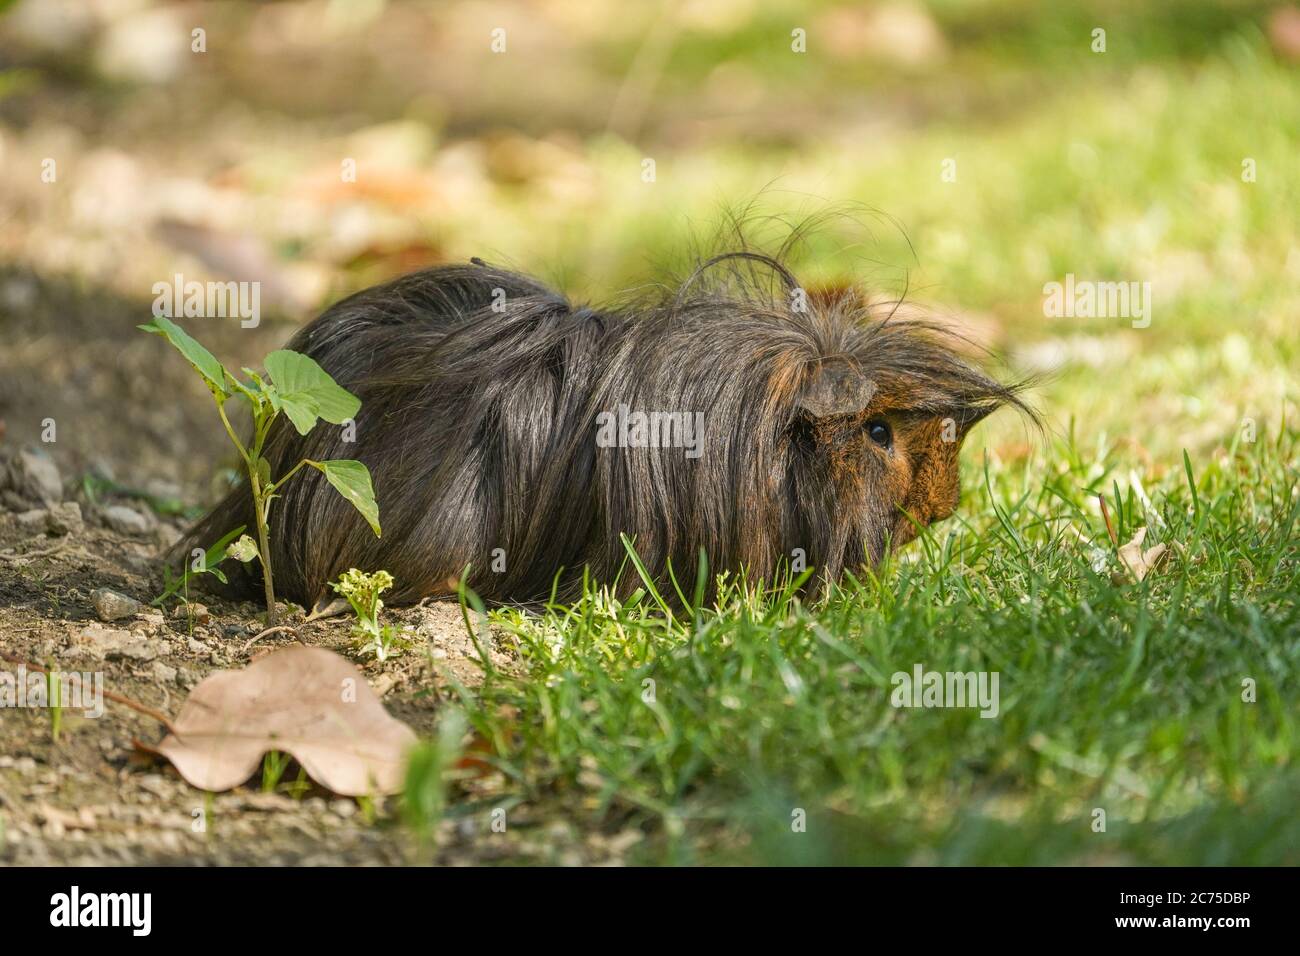 Cavia di maiale, cavia di capelli lunghi che vagano liberamente nel parco in Spagna. Foto Stock